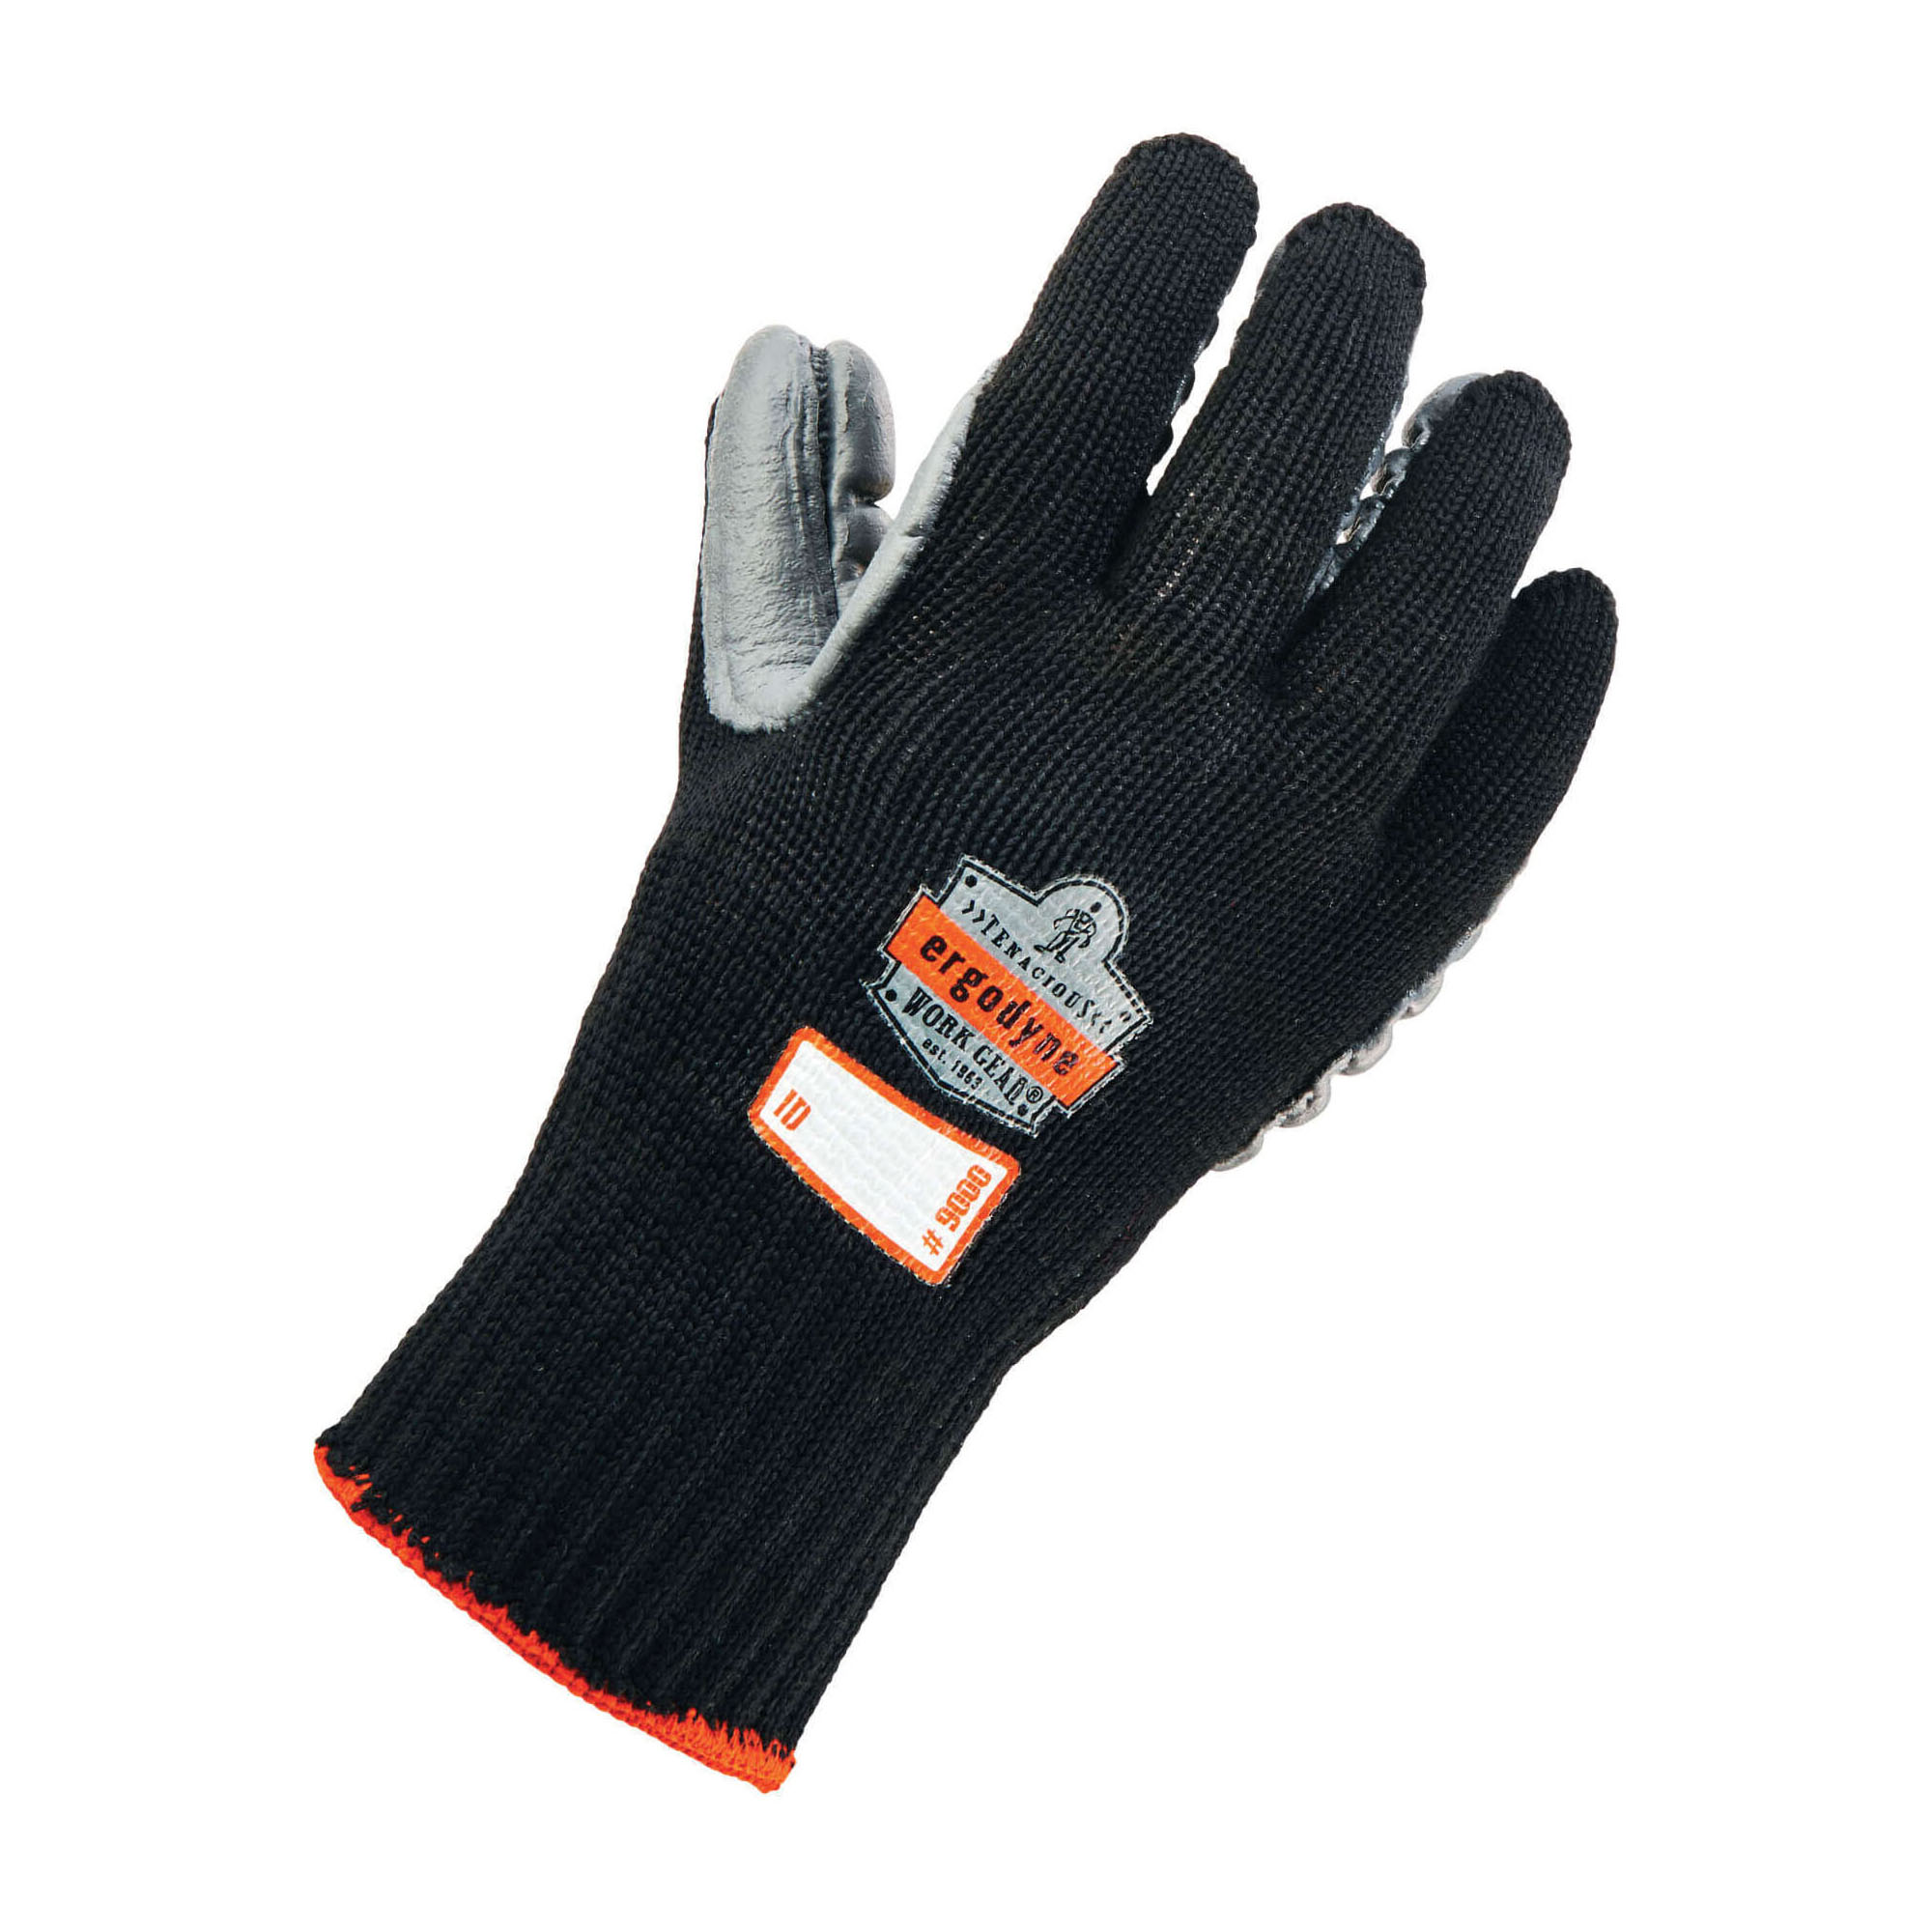 Anti-Vibration Gloves XL